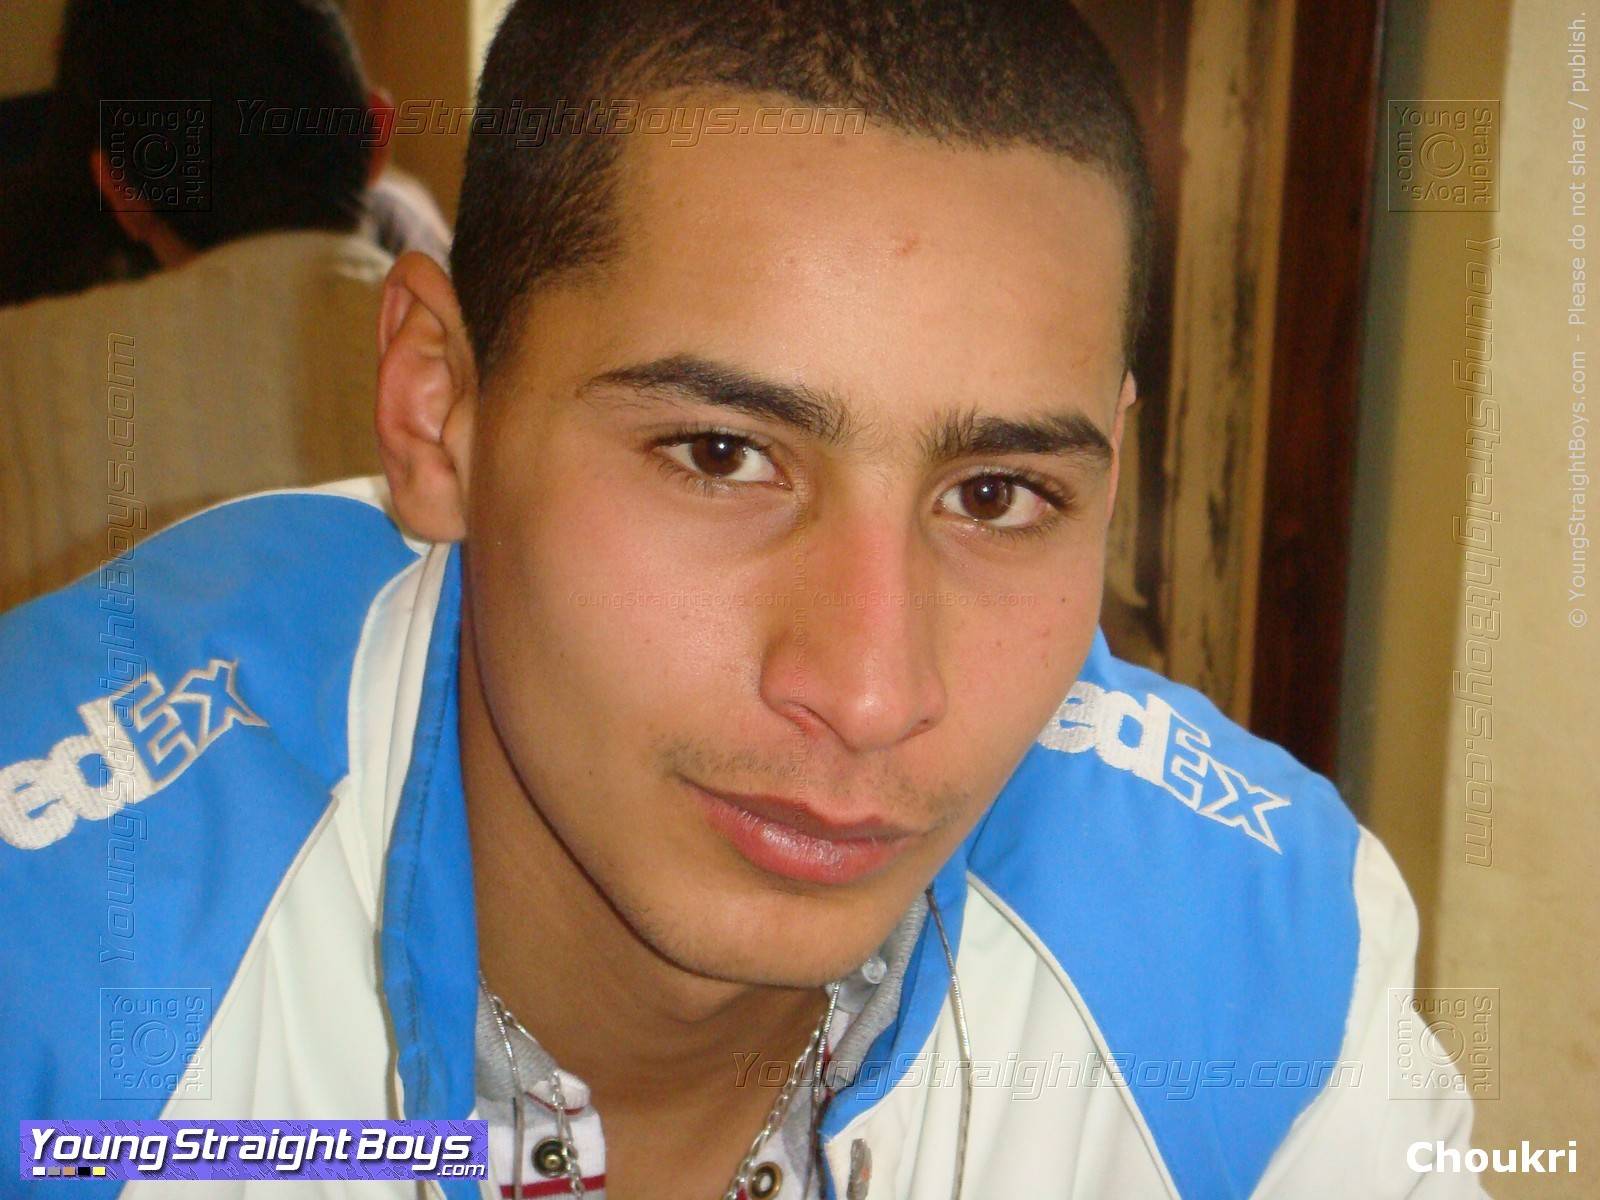 Gesichtsbild eines sehr hübschen jungen arabischen heterosexuellen Schnuckels in einem Café, lächelnd (süßes Gesicht und Augen und Mund)